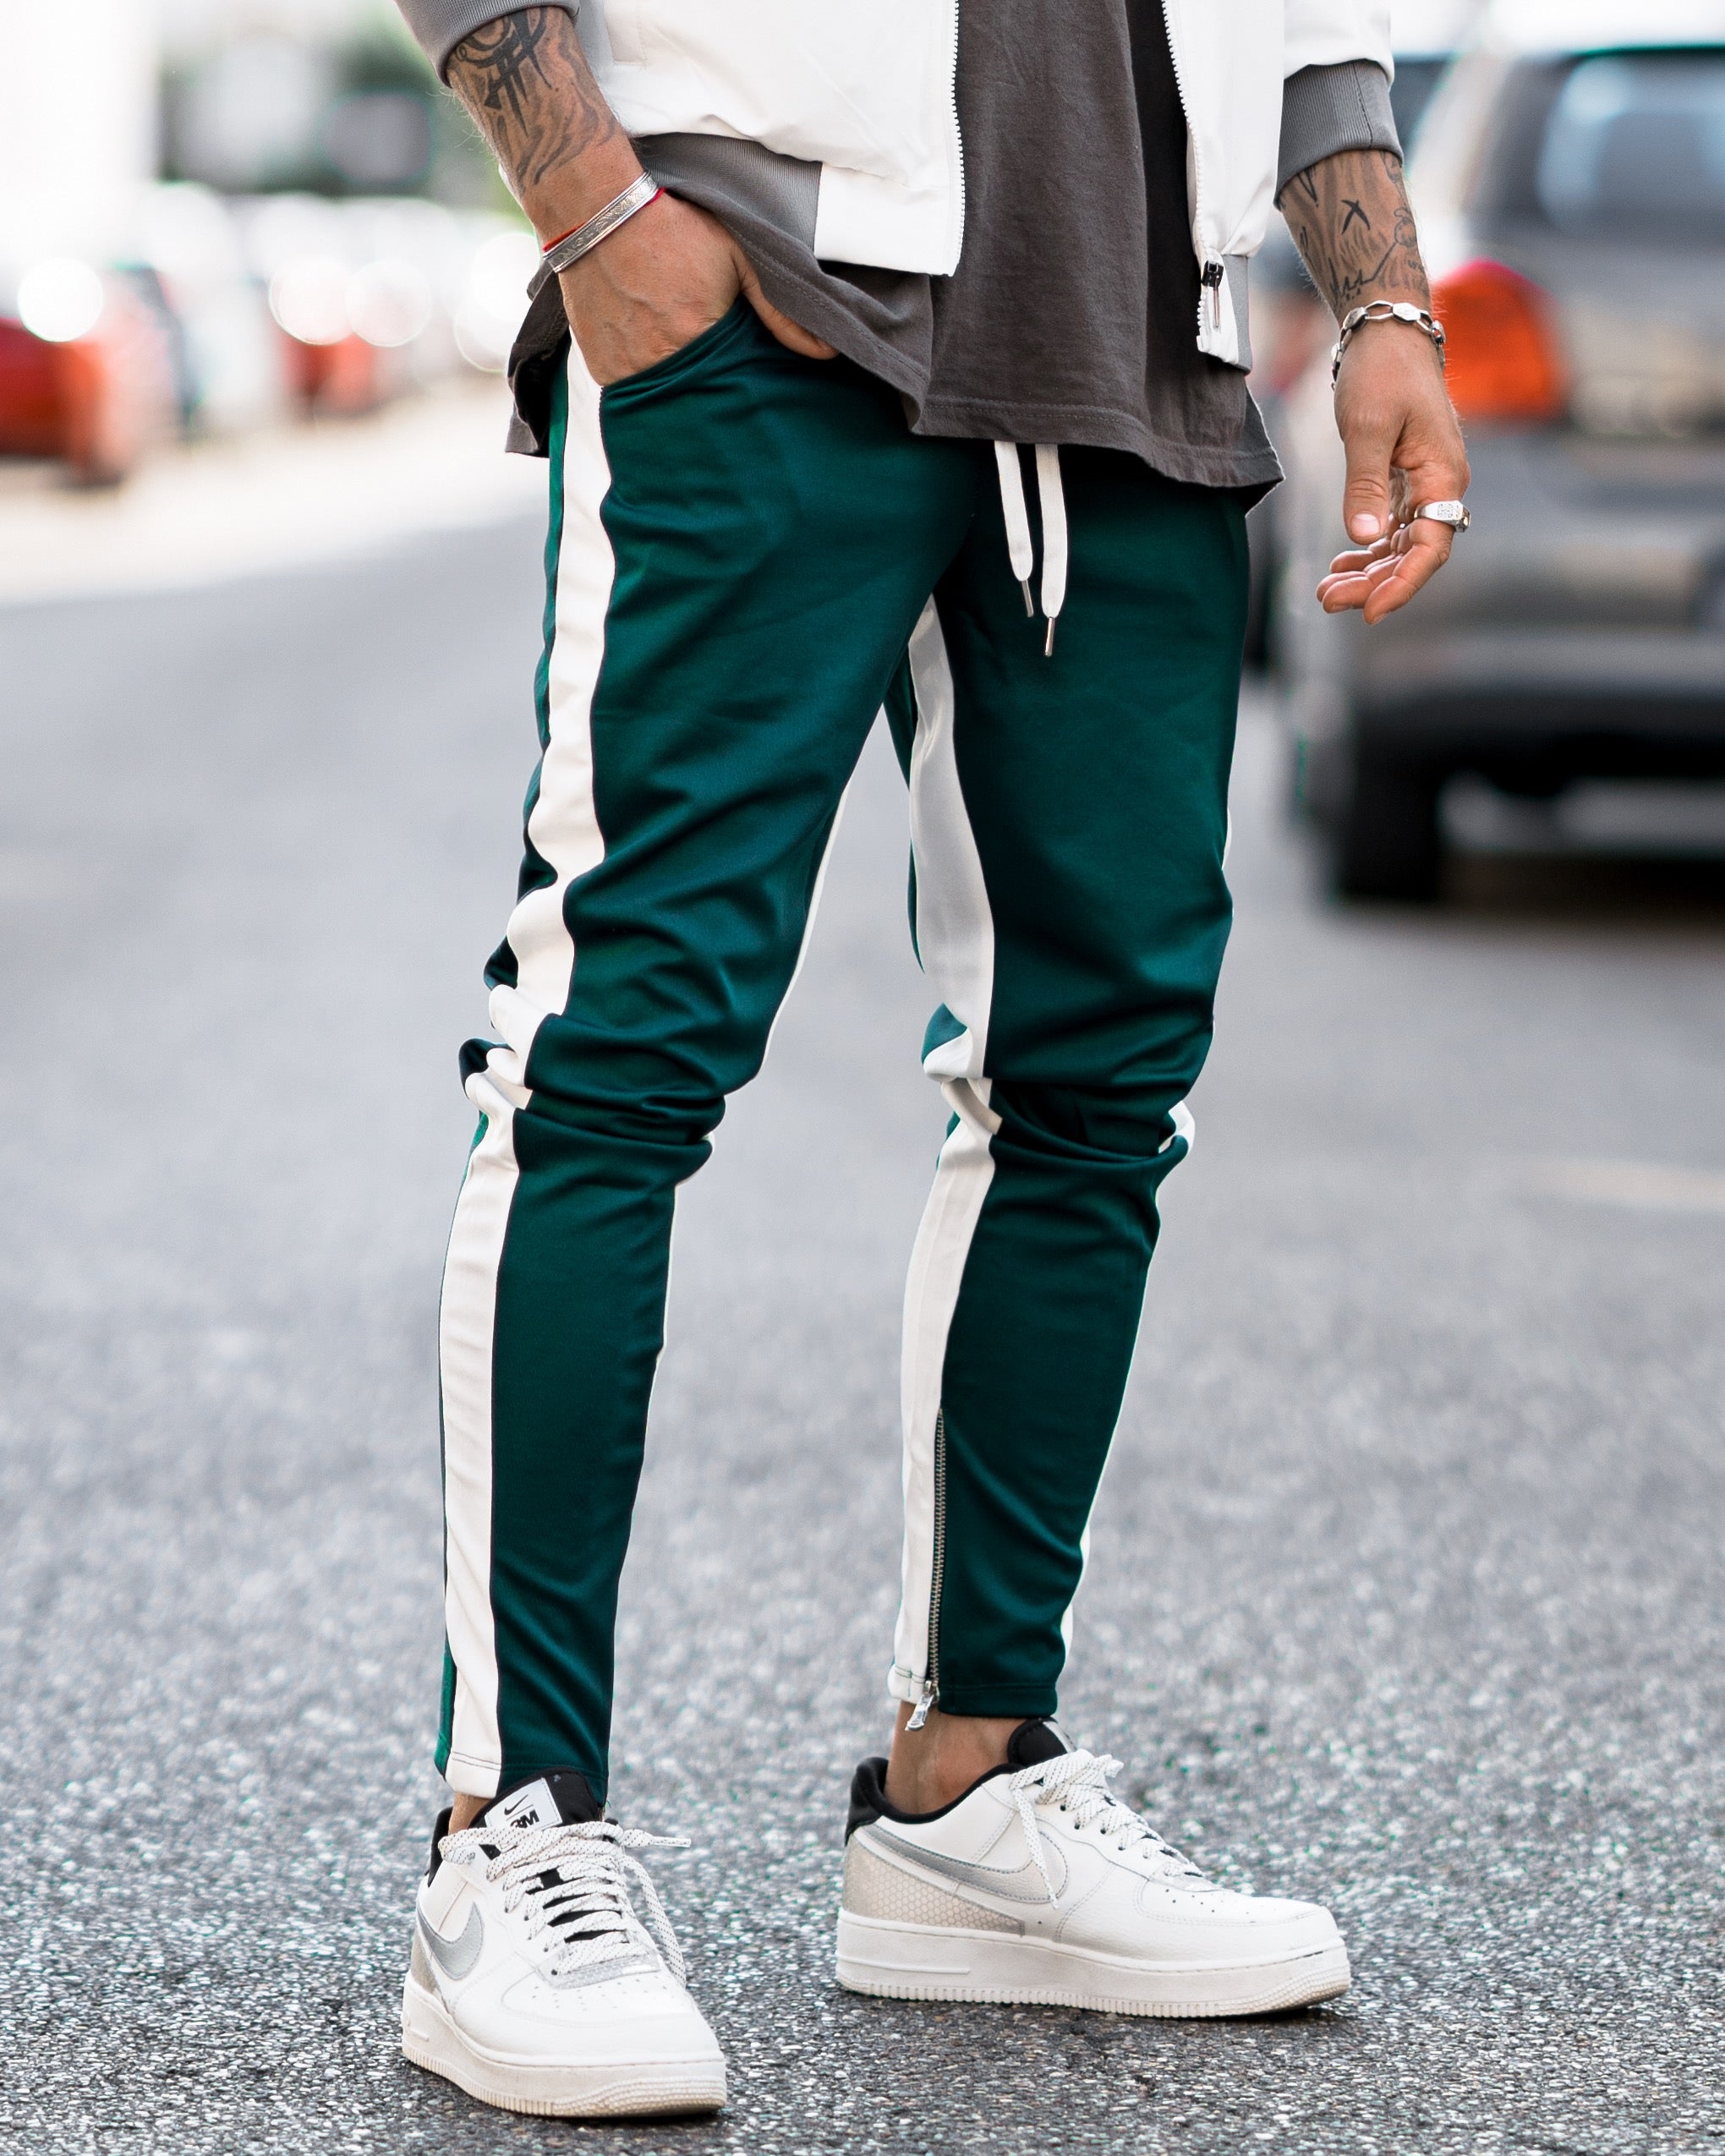 Frilivin - Pantalon vert bande blanche - Stayin